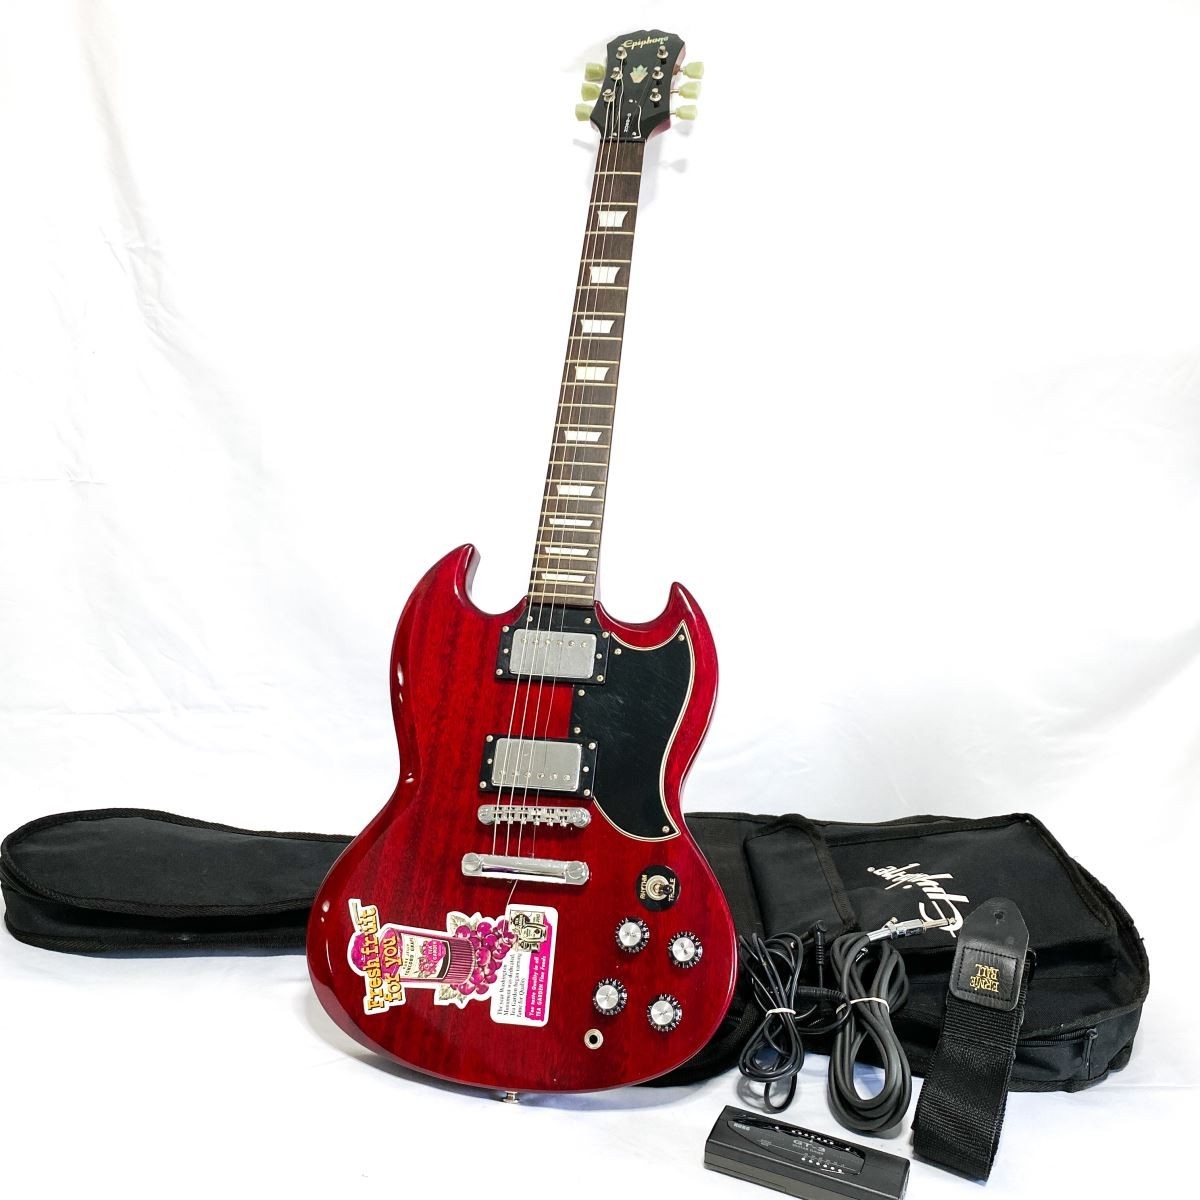 音出し確認済み】Epiphone by Gibson SG? Made in Korea エピフォン ギブソン エレキギター 1999年製 レッド×ブラック  弦楽器 G234